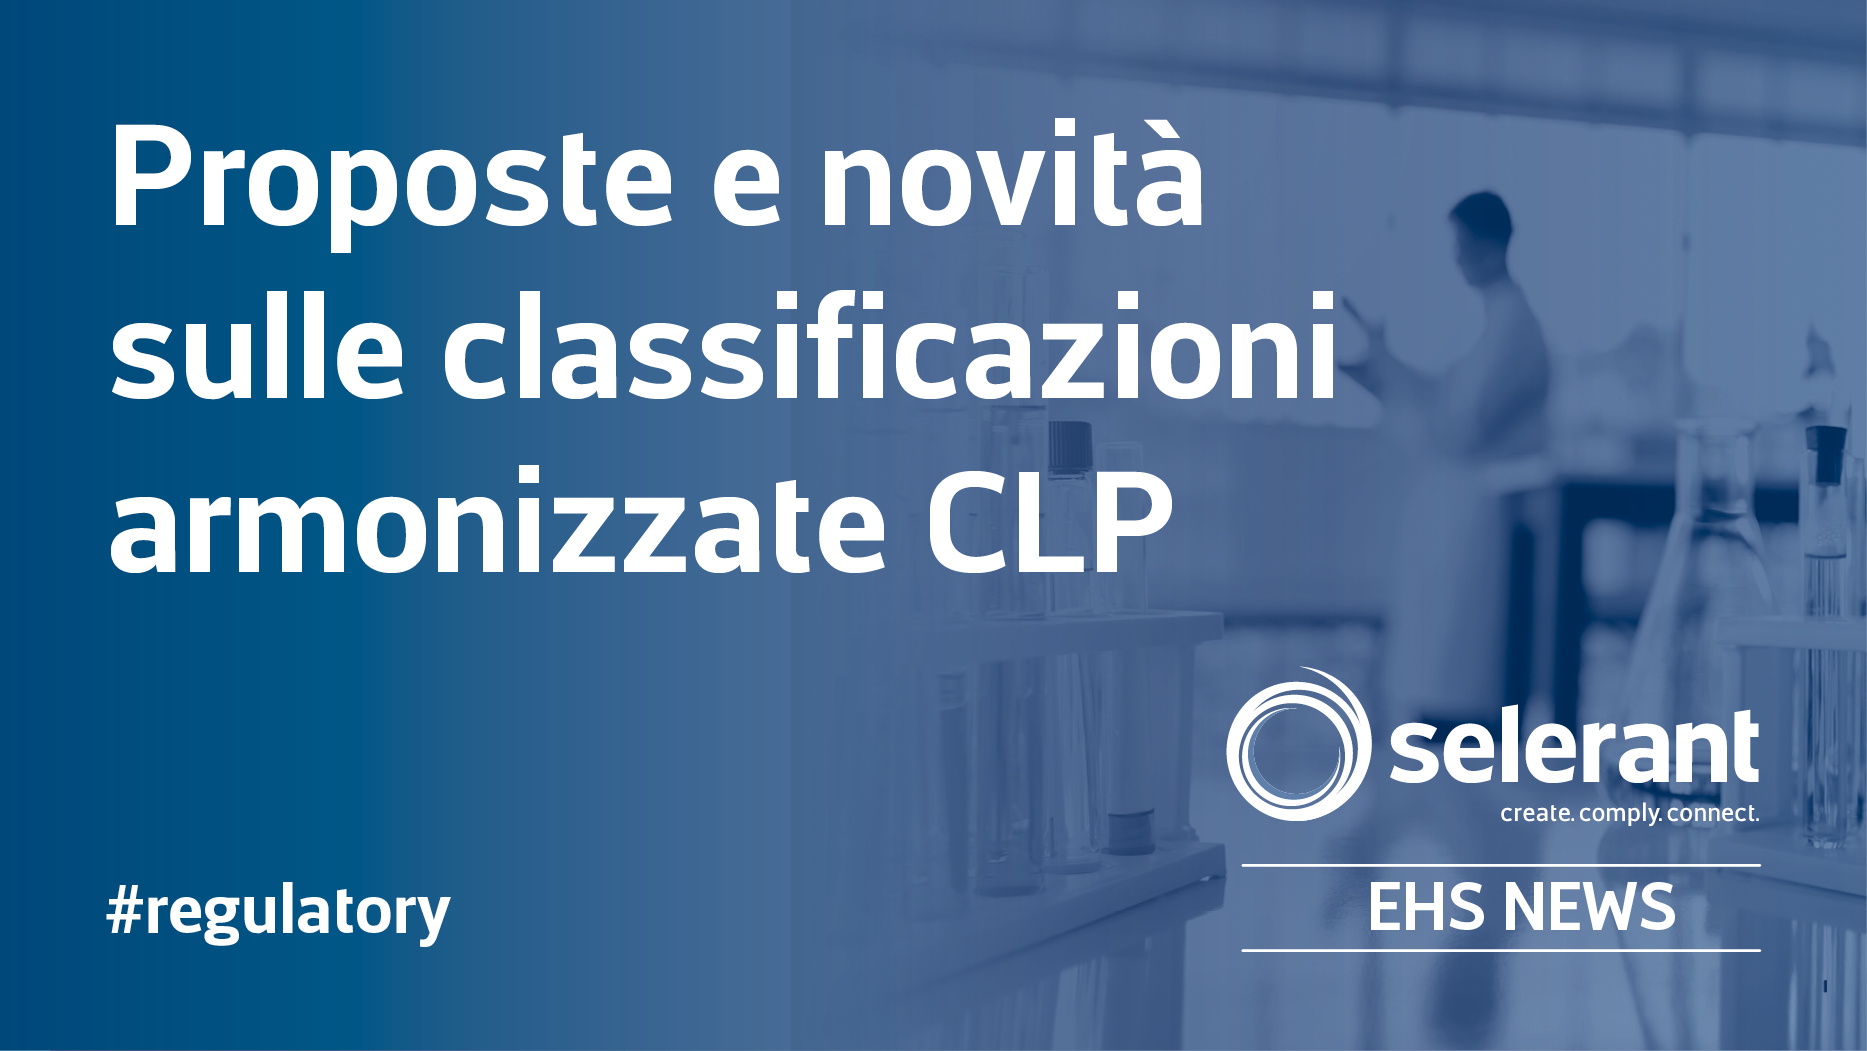 Proposte e novità sulle classificazioni armonizzate CLP